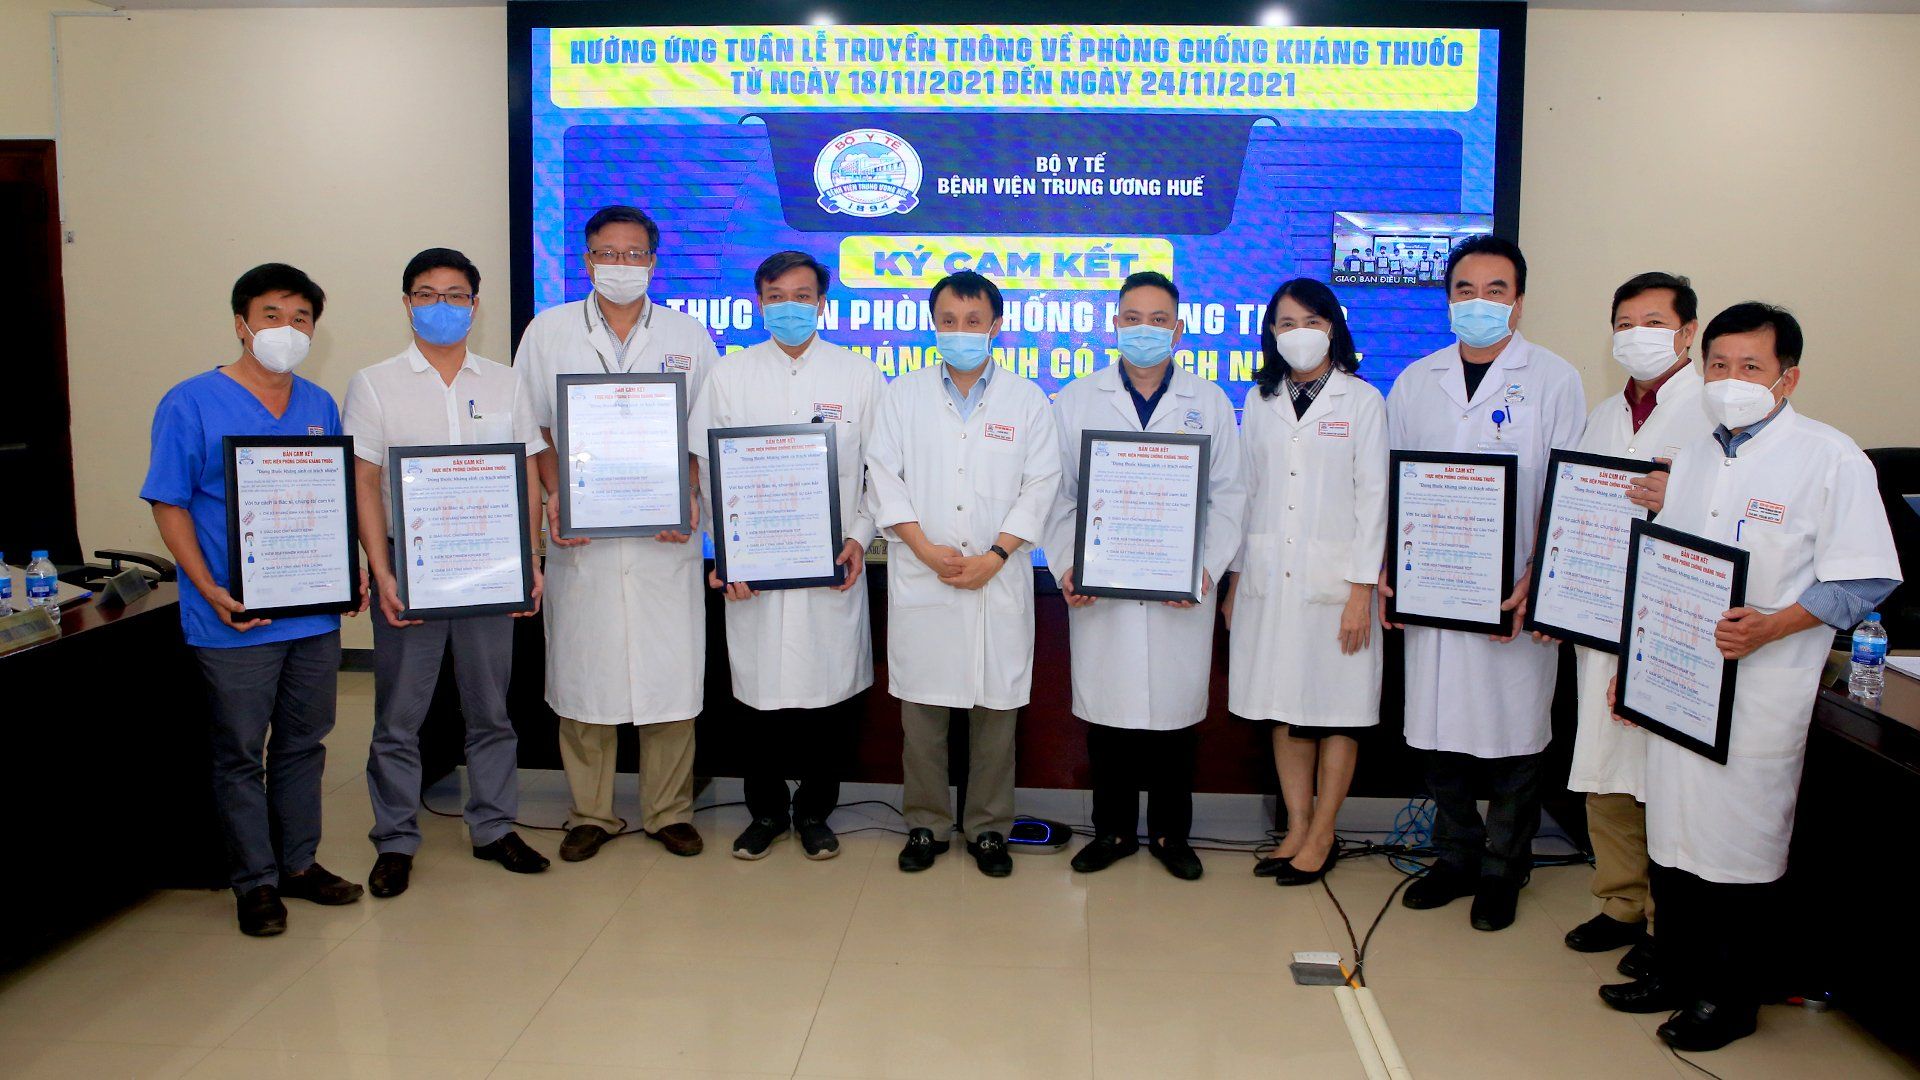 Bệnh viện TW Huế hưởng ứng tuần lễ truyền thông về phòng, chống kháng thuốc năm 2021 